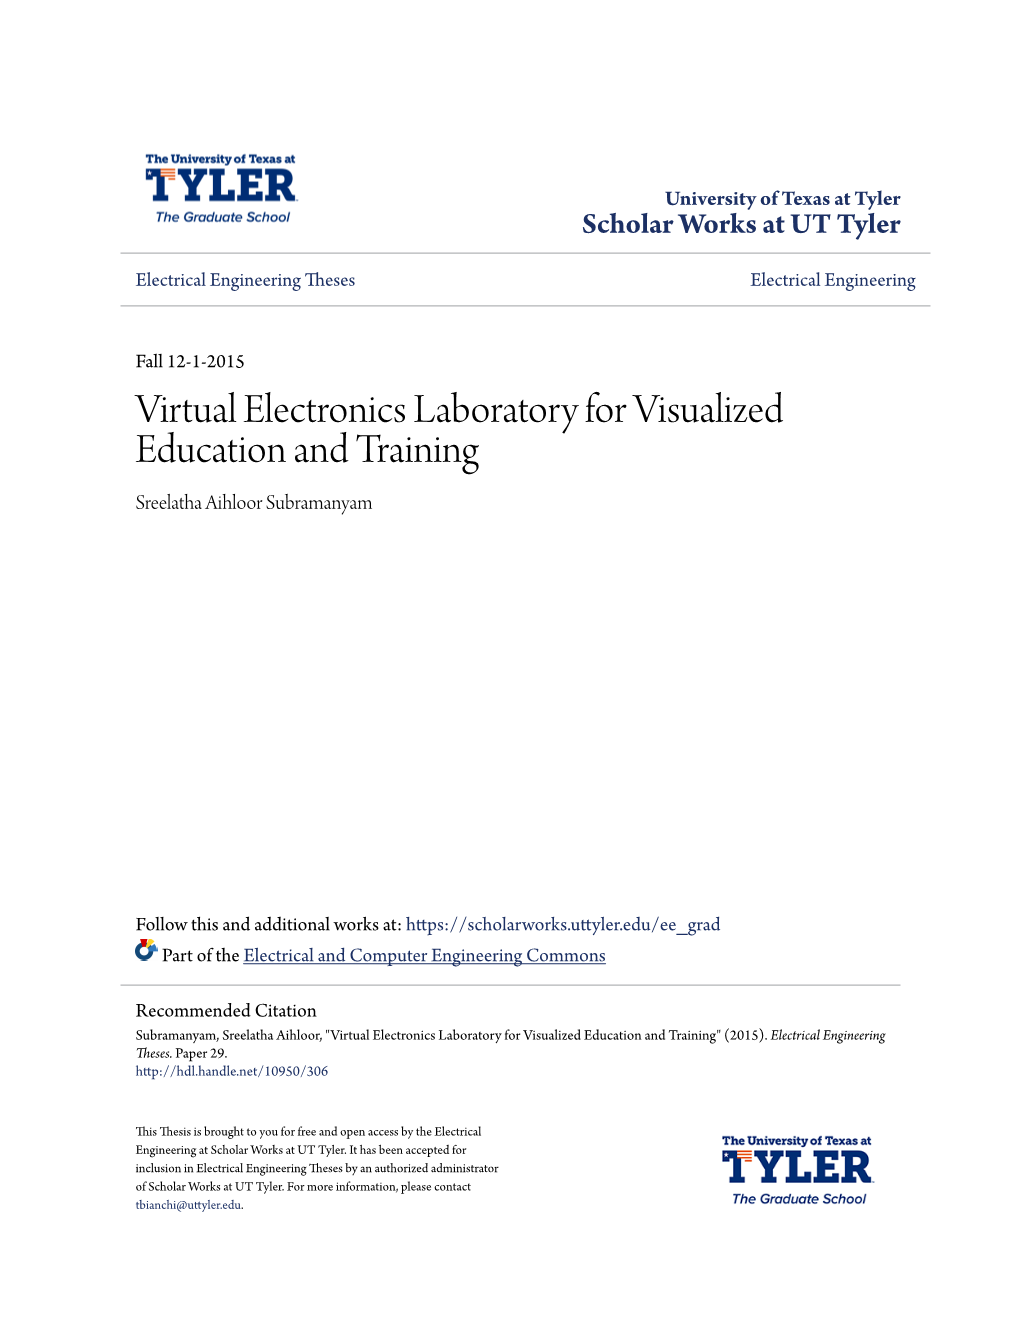 Virtual Electronics Laboratory for Visualized Education and Training Sreelatha Aihloor Subramanyam